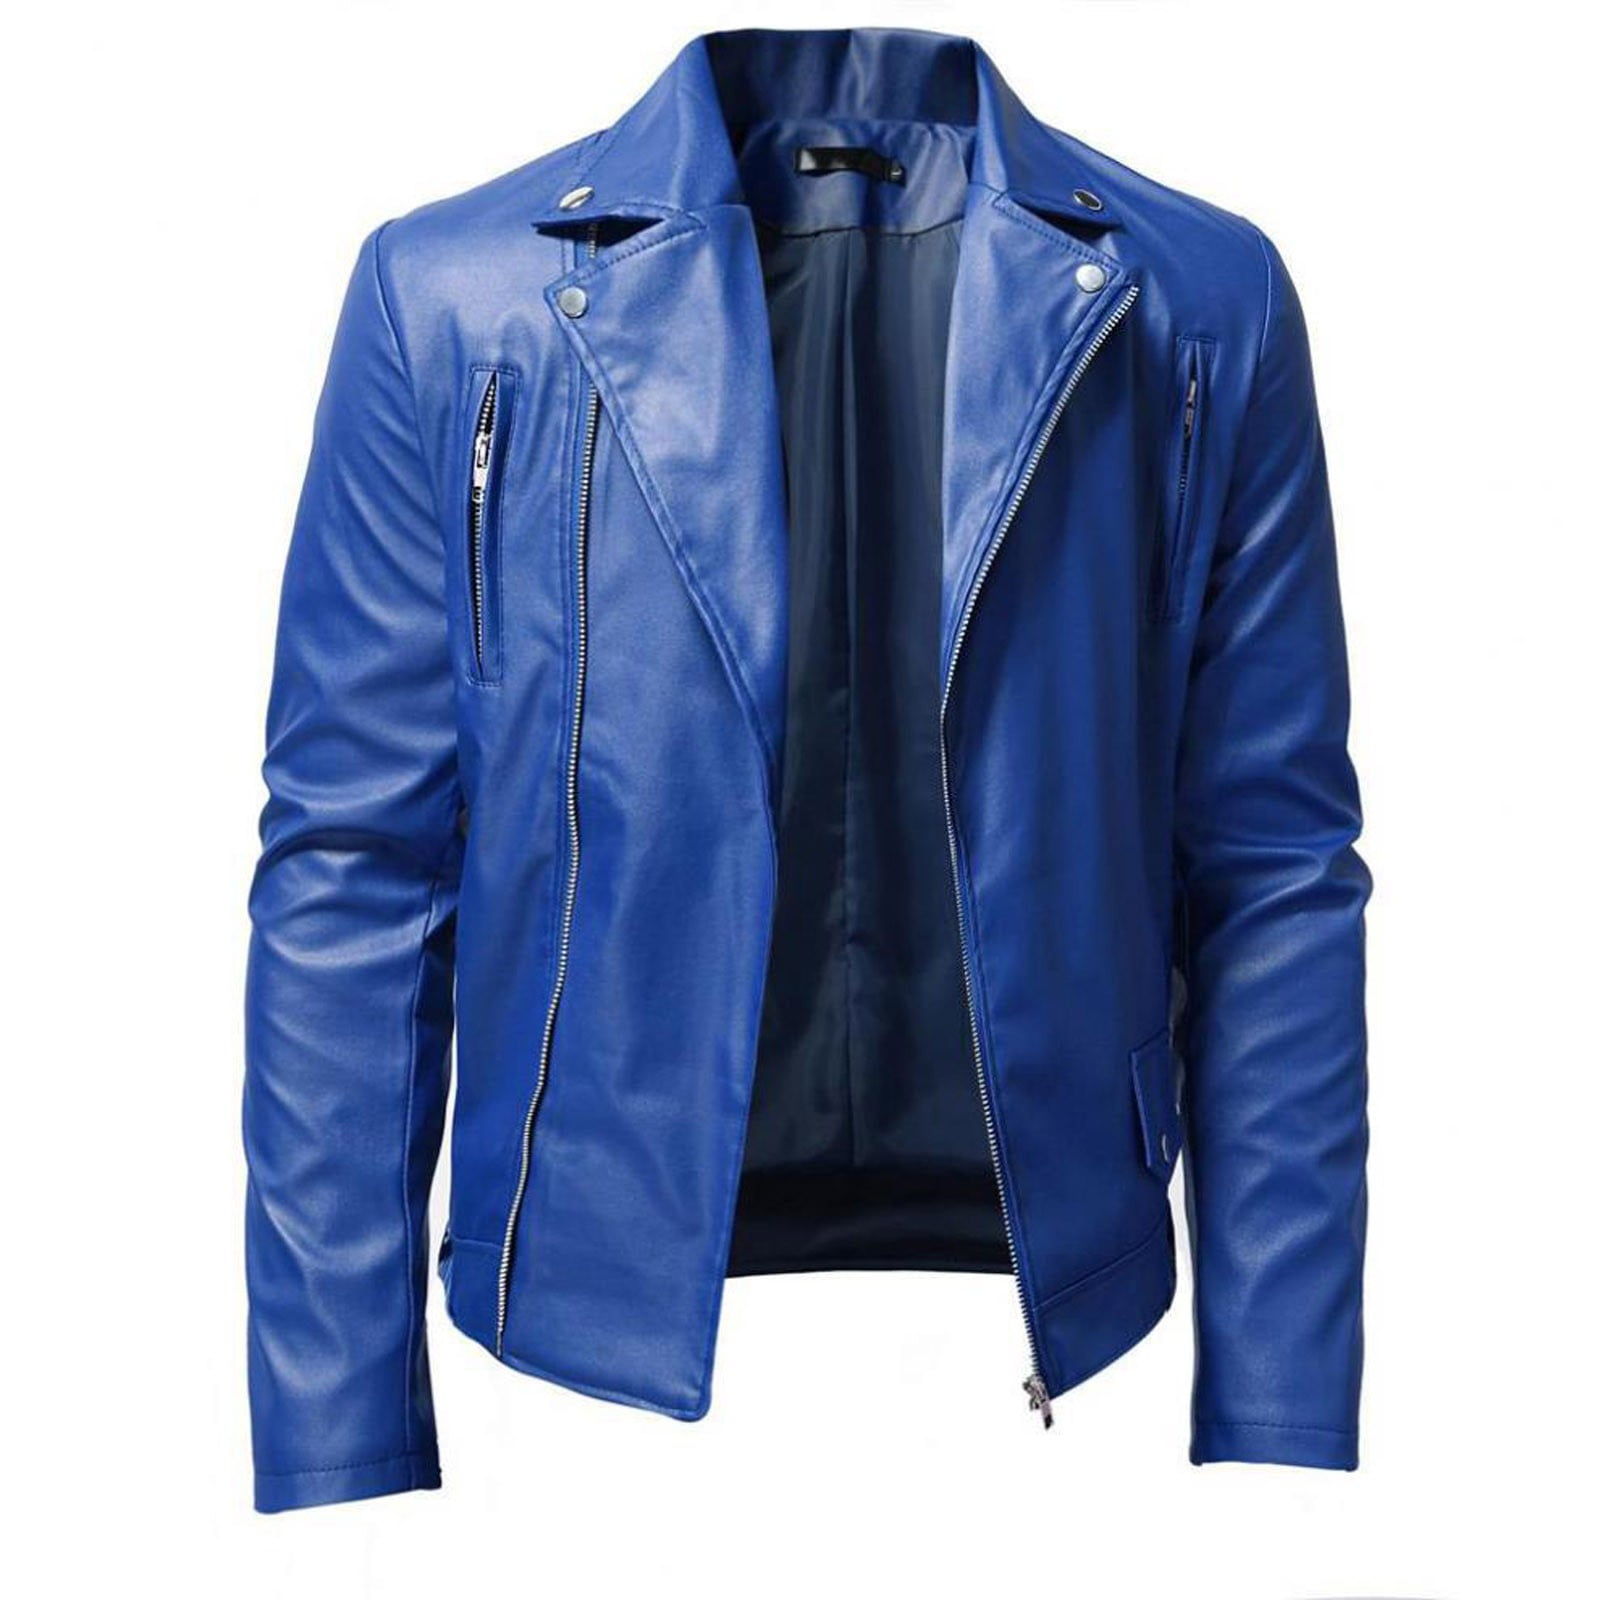 Women's Belted Biker Baby Blue Leather Jacket - HJacket